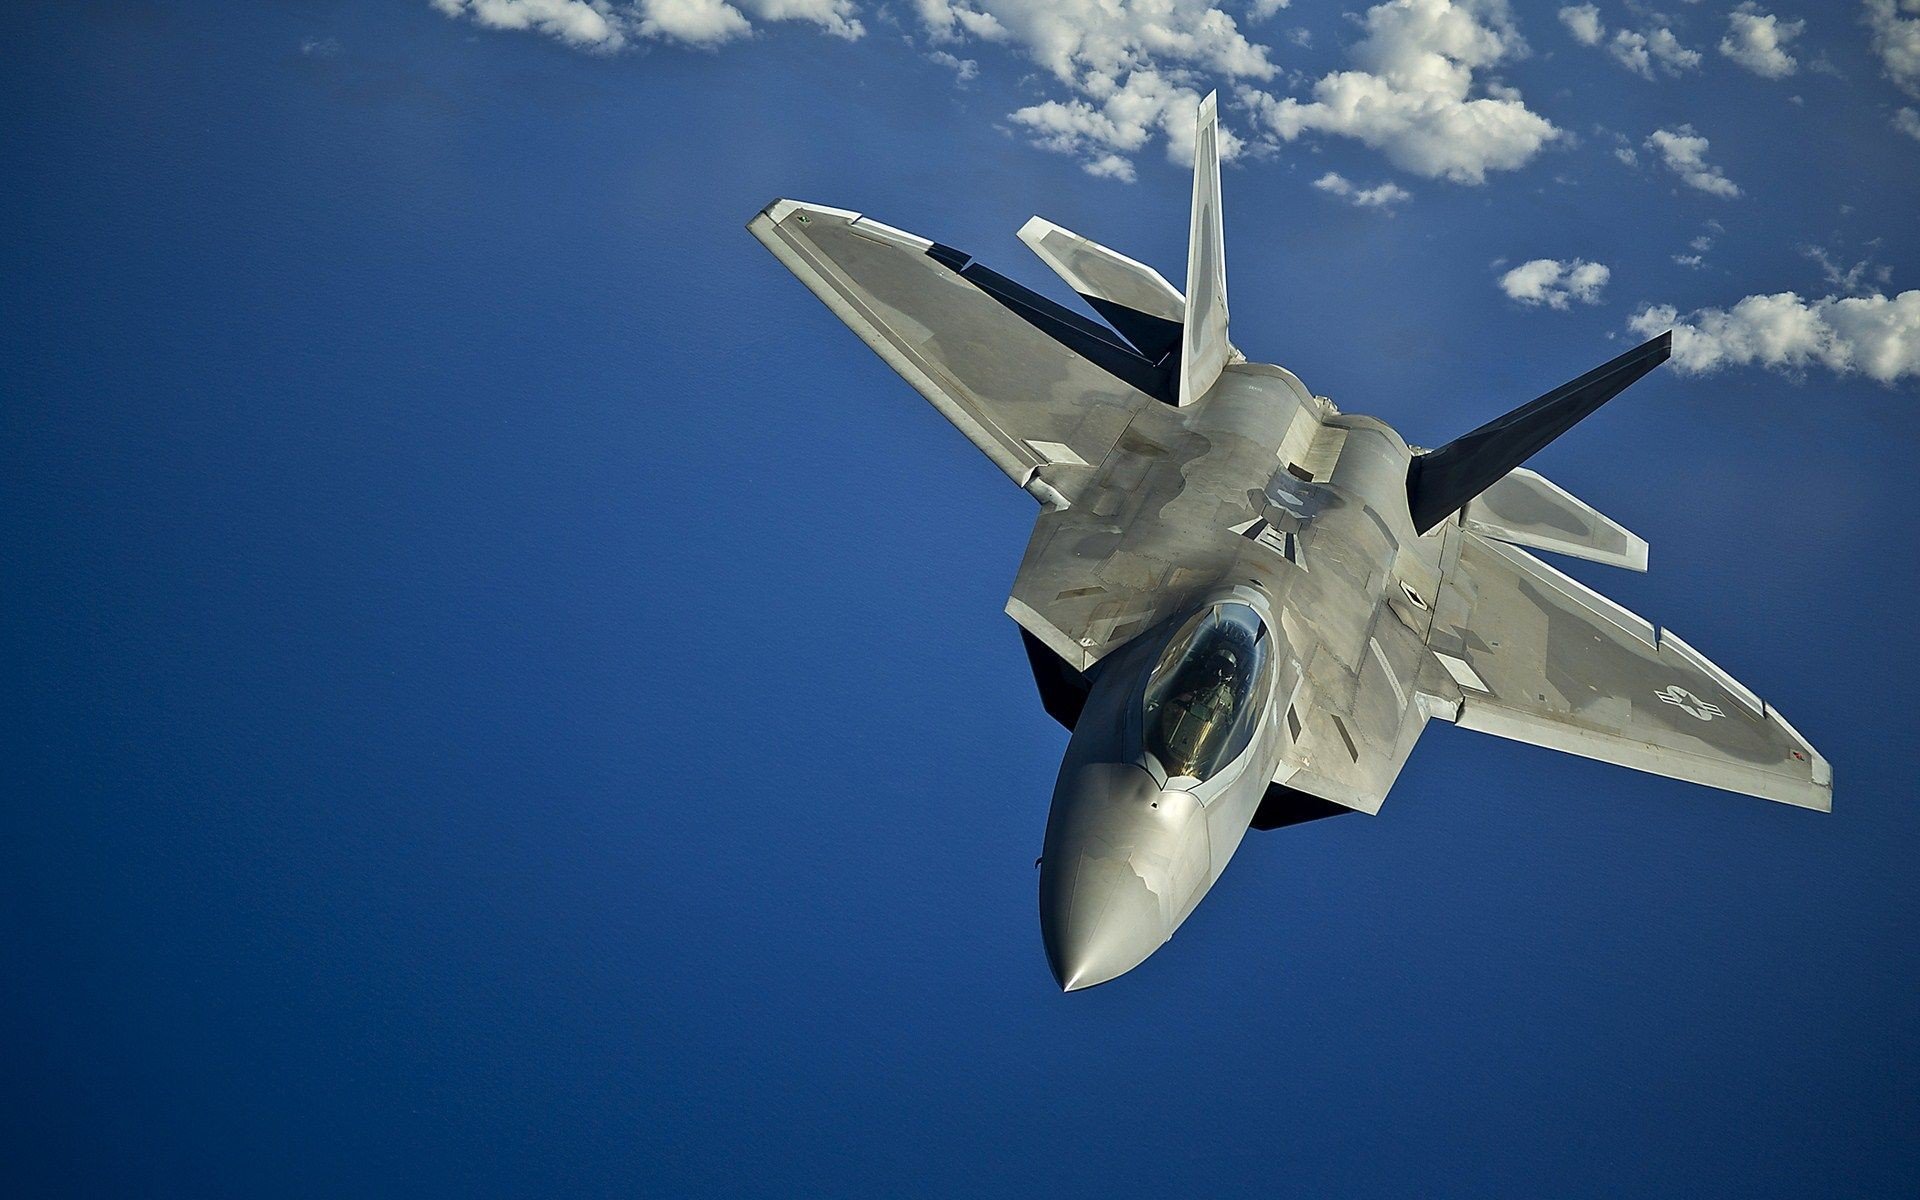 Обозреватель Business Insider сравнил самолеты Су-35 и F-22